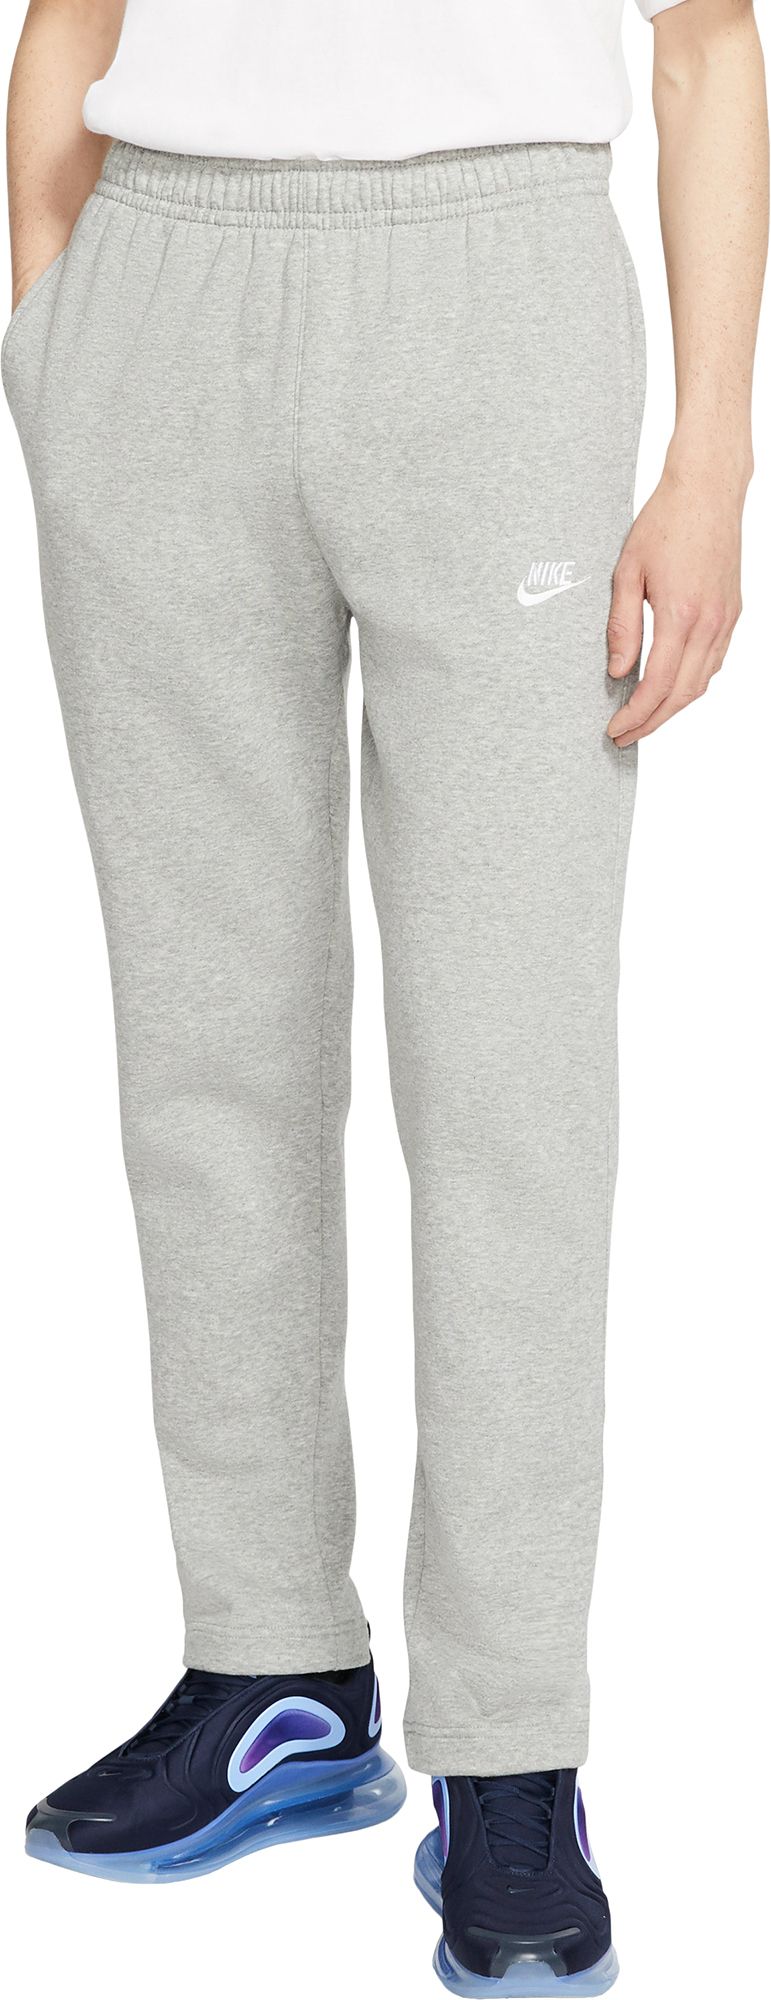 gray nike fleece sweatpants